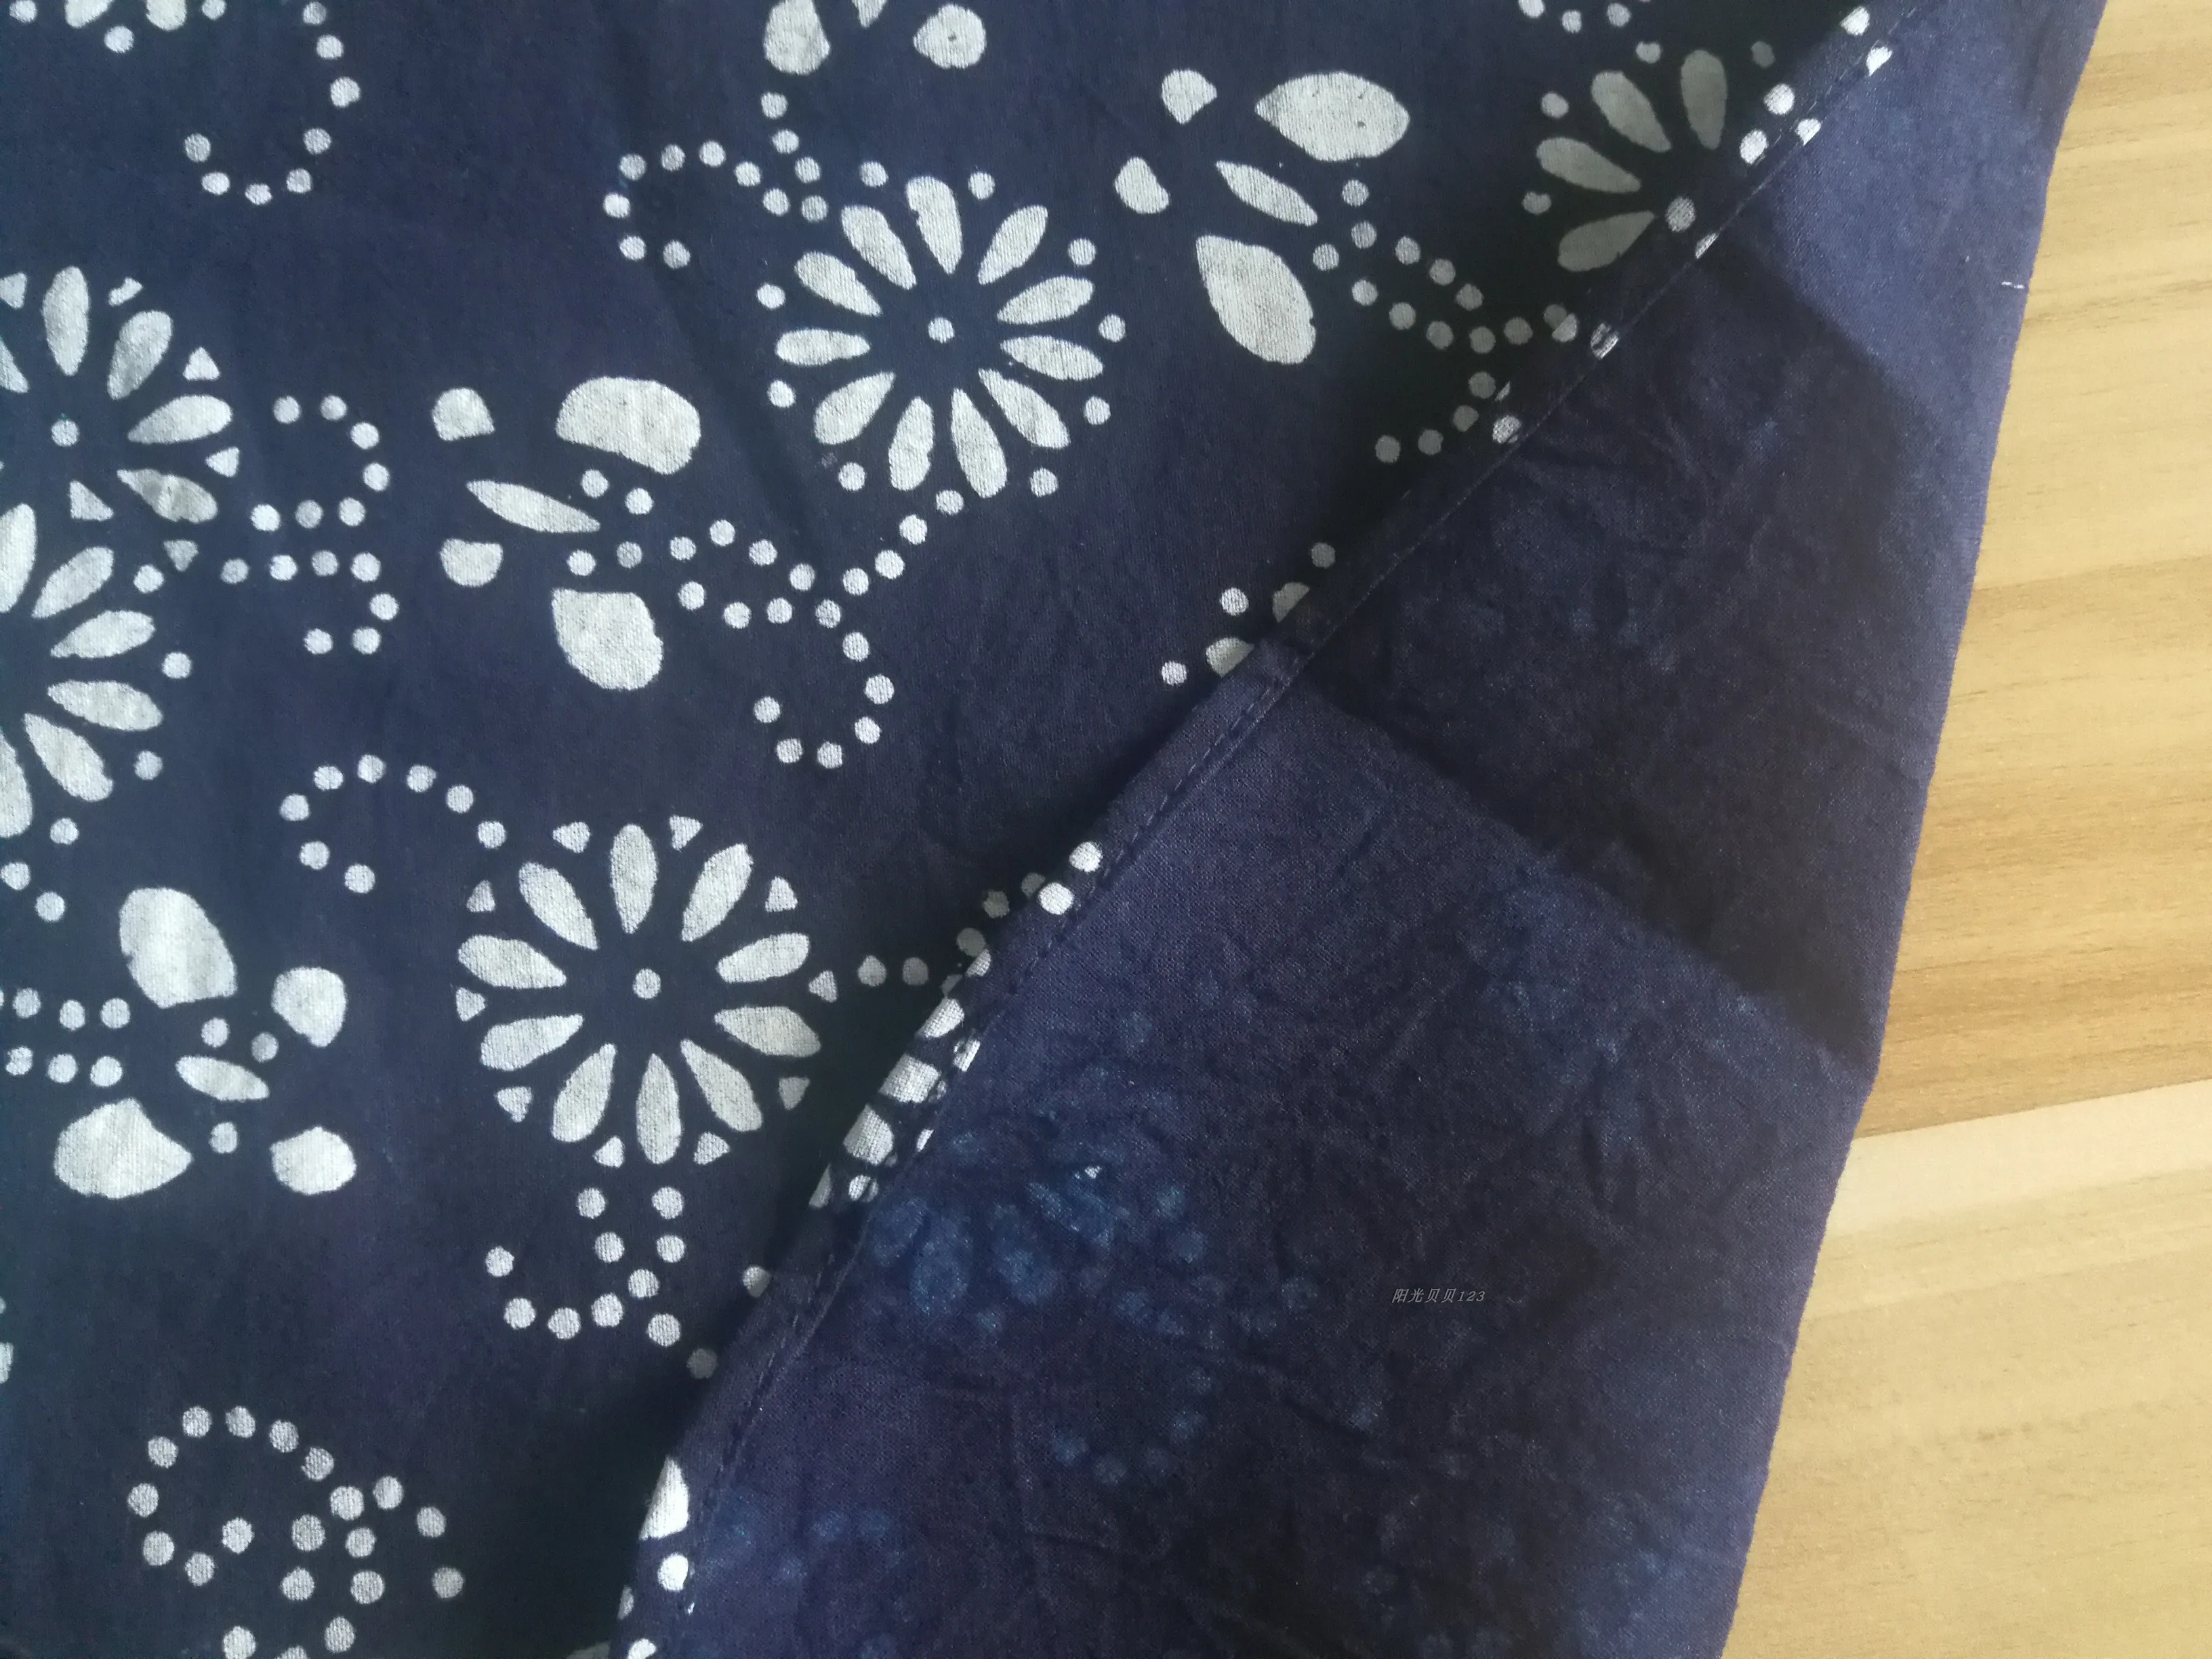 Ручная работа синий бязь грубая ткань Индиго темно синий батик ткань Ситцевая для одежды занавеска скатерть DIY Китайский народный стиль